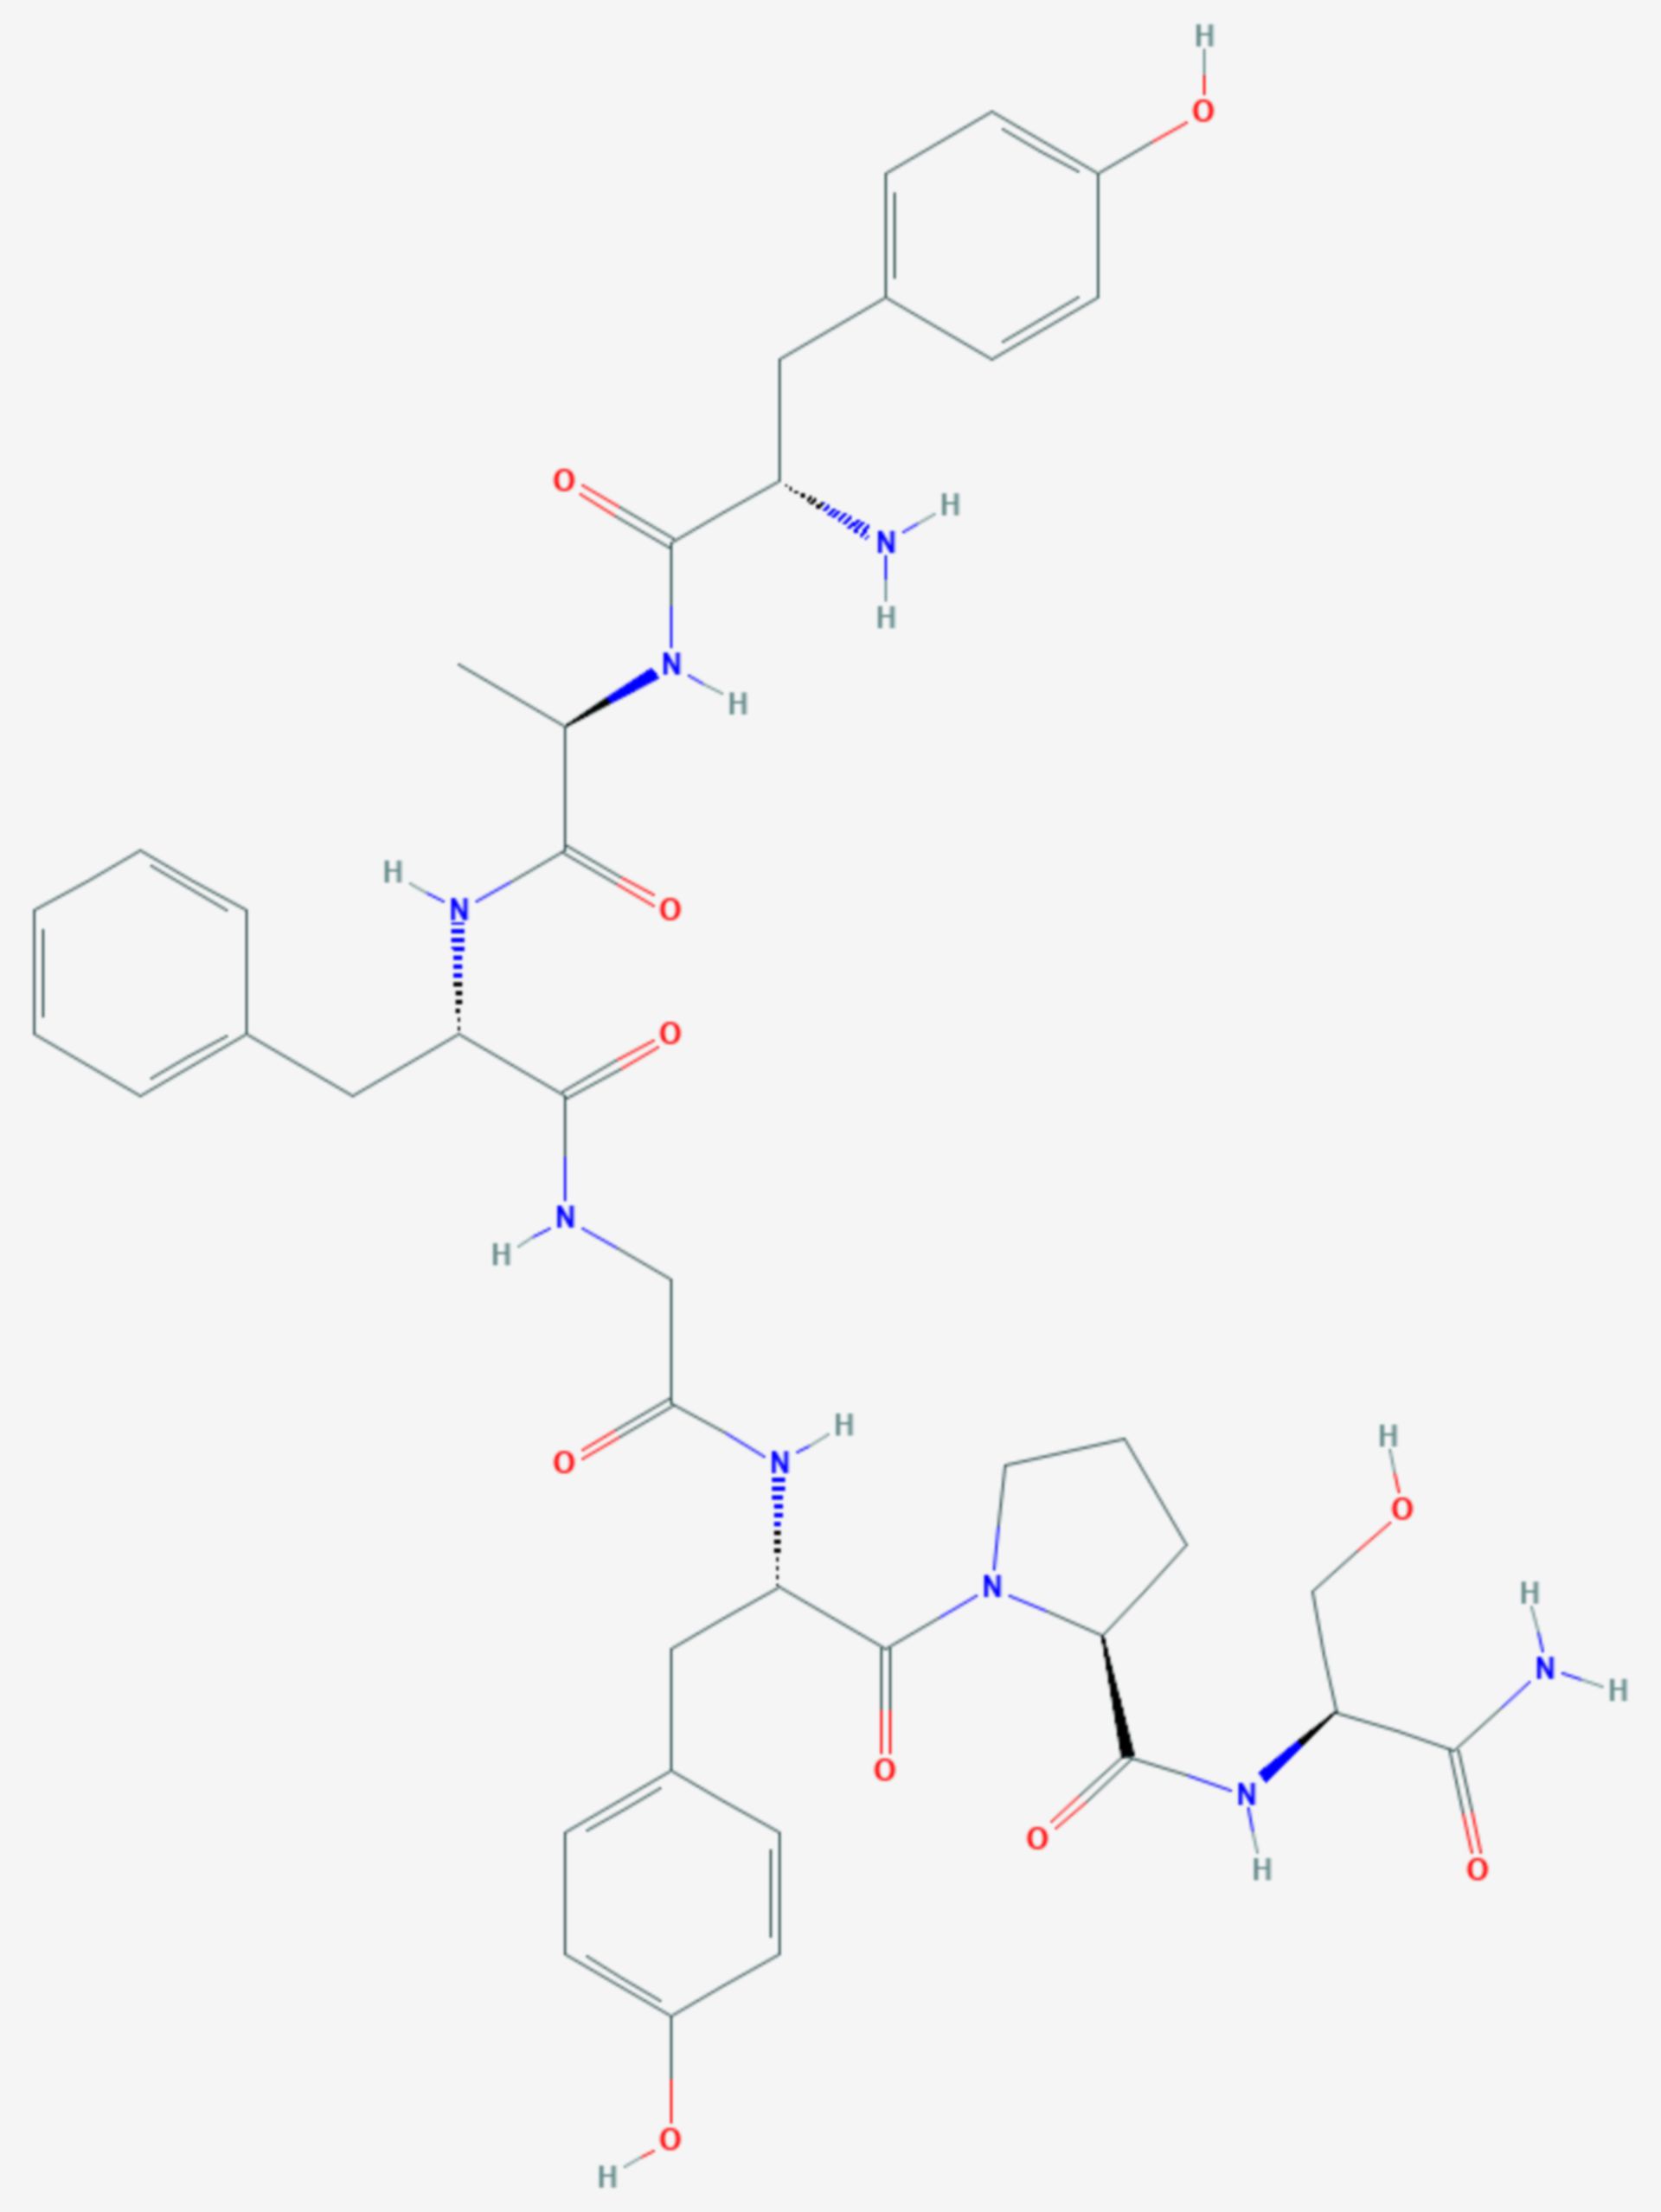 Dermorphin (Strukturformel)